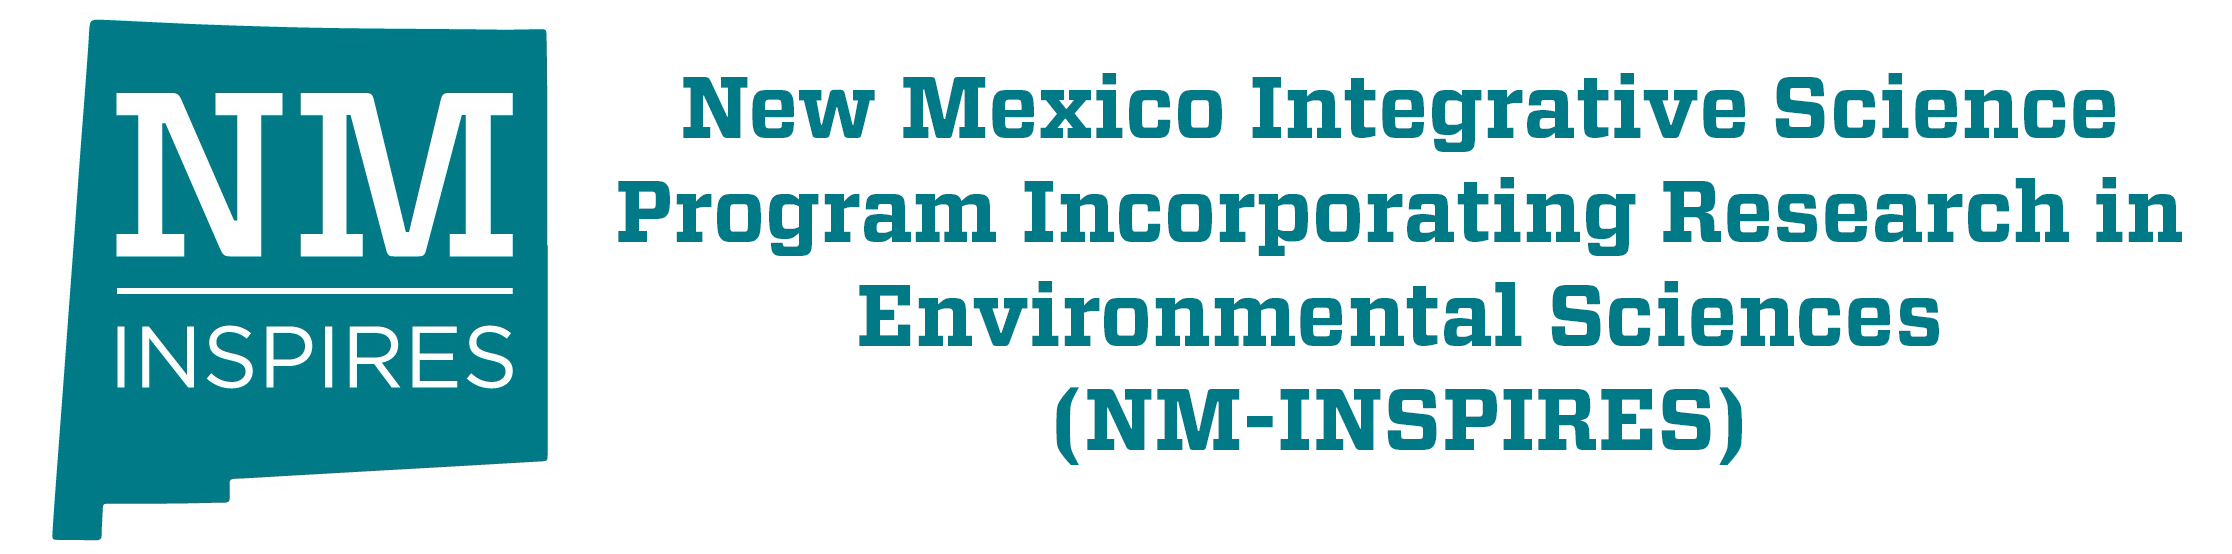 New Mexico Integrative Science Program unter Einbeziehung der Forschung in den Umweltwissenschaften (NM-INSPIRES)